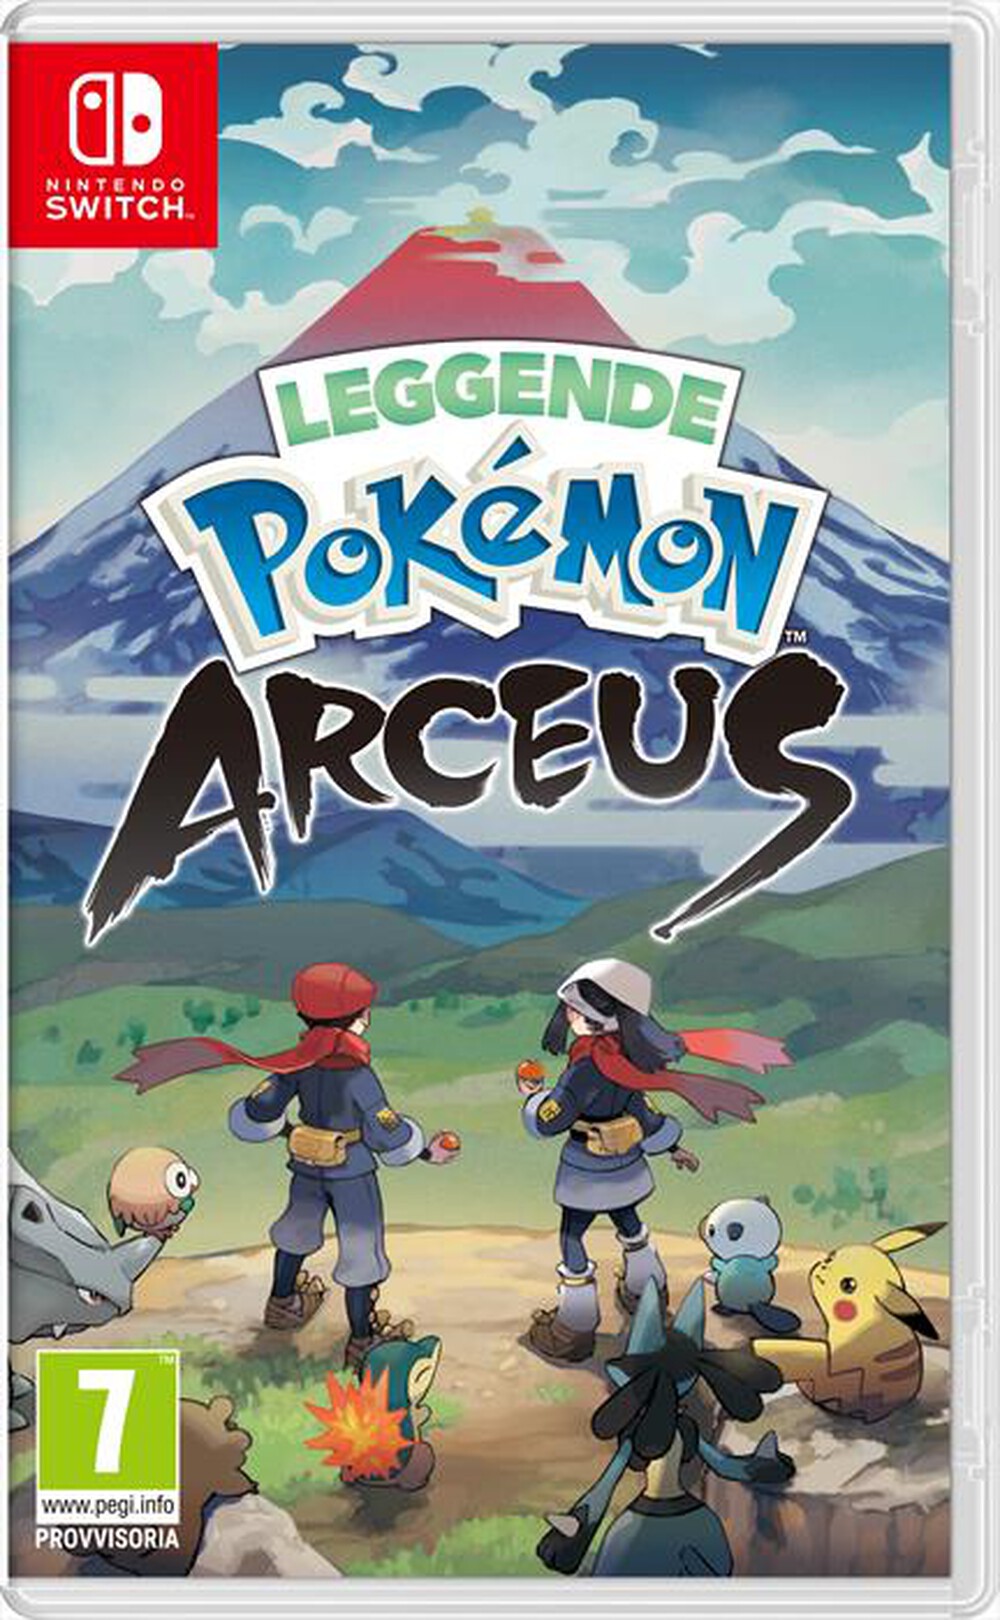 "NINTENDO - Pokemon Legends Arceus"